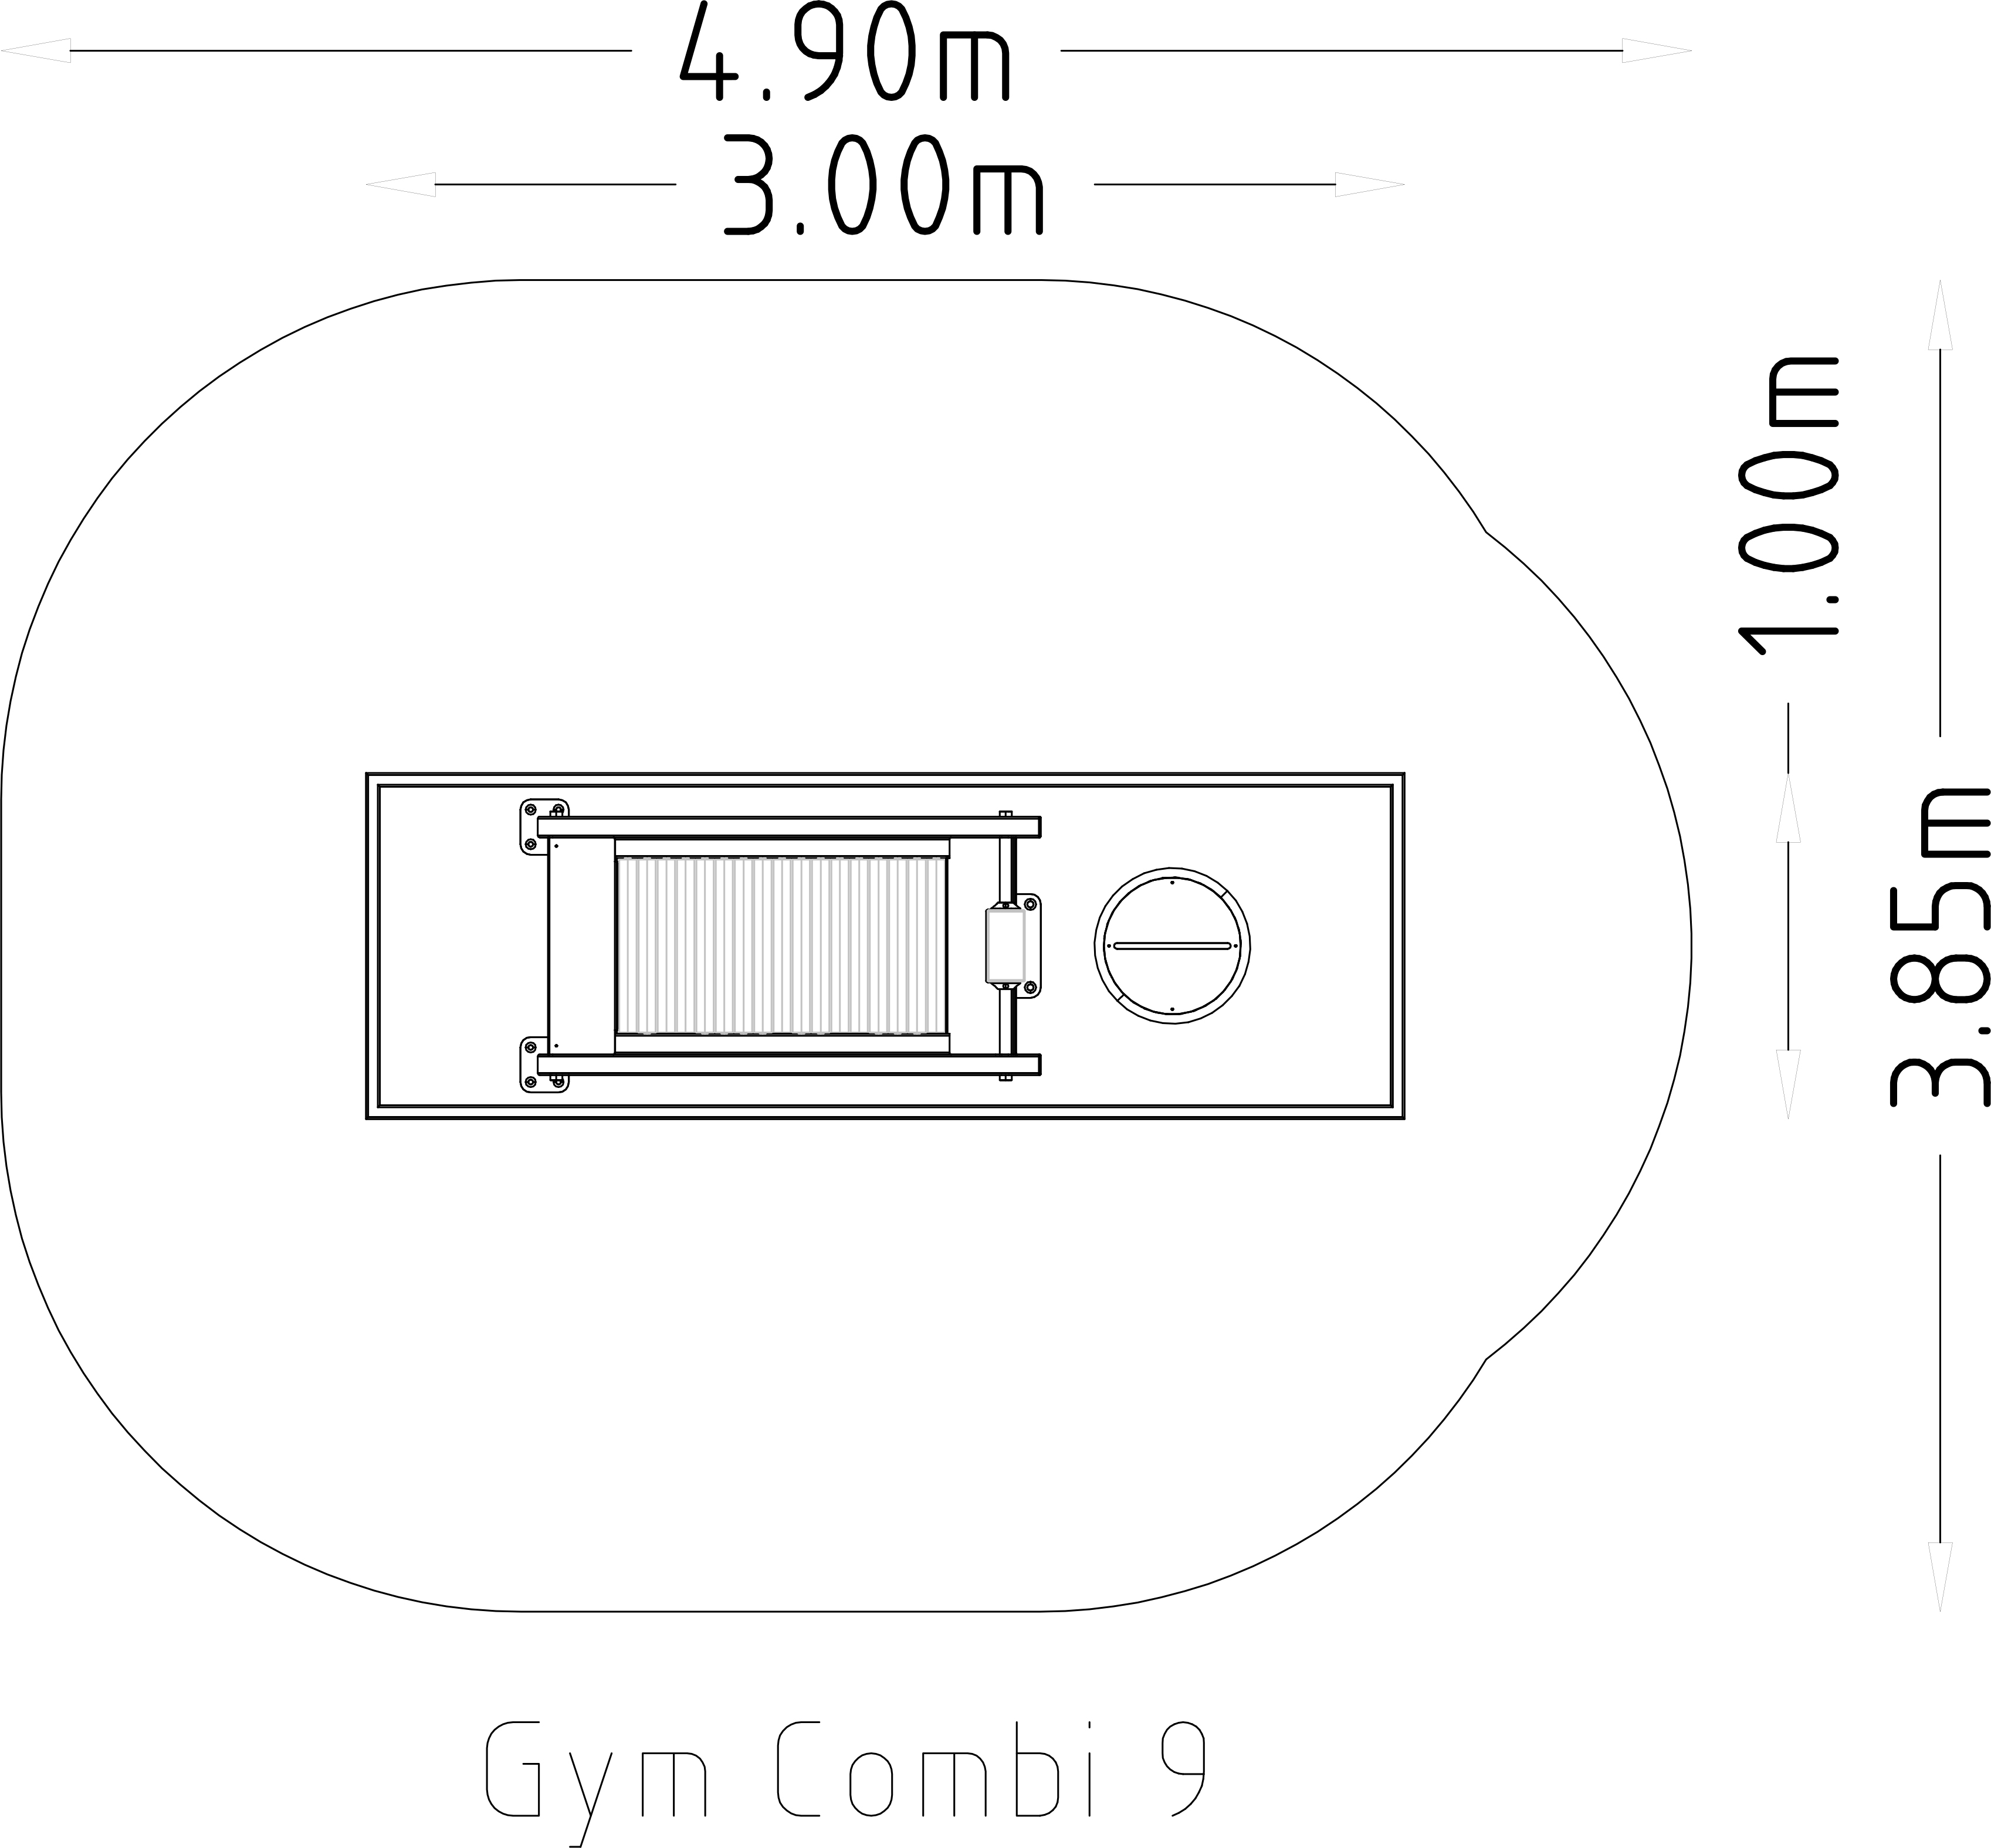 Denfit Gym Combi 9